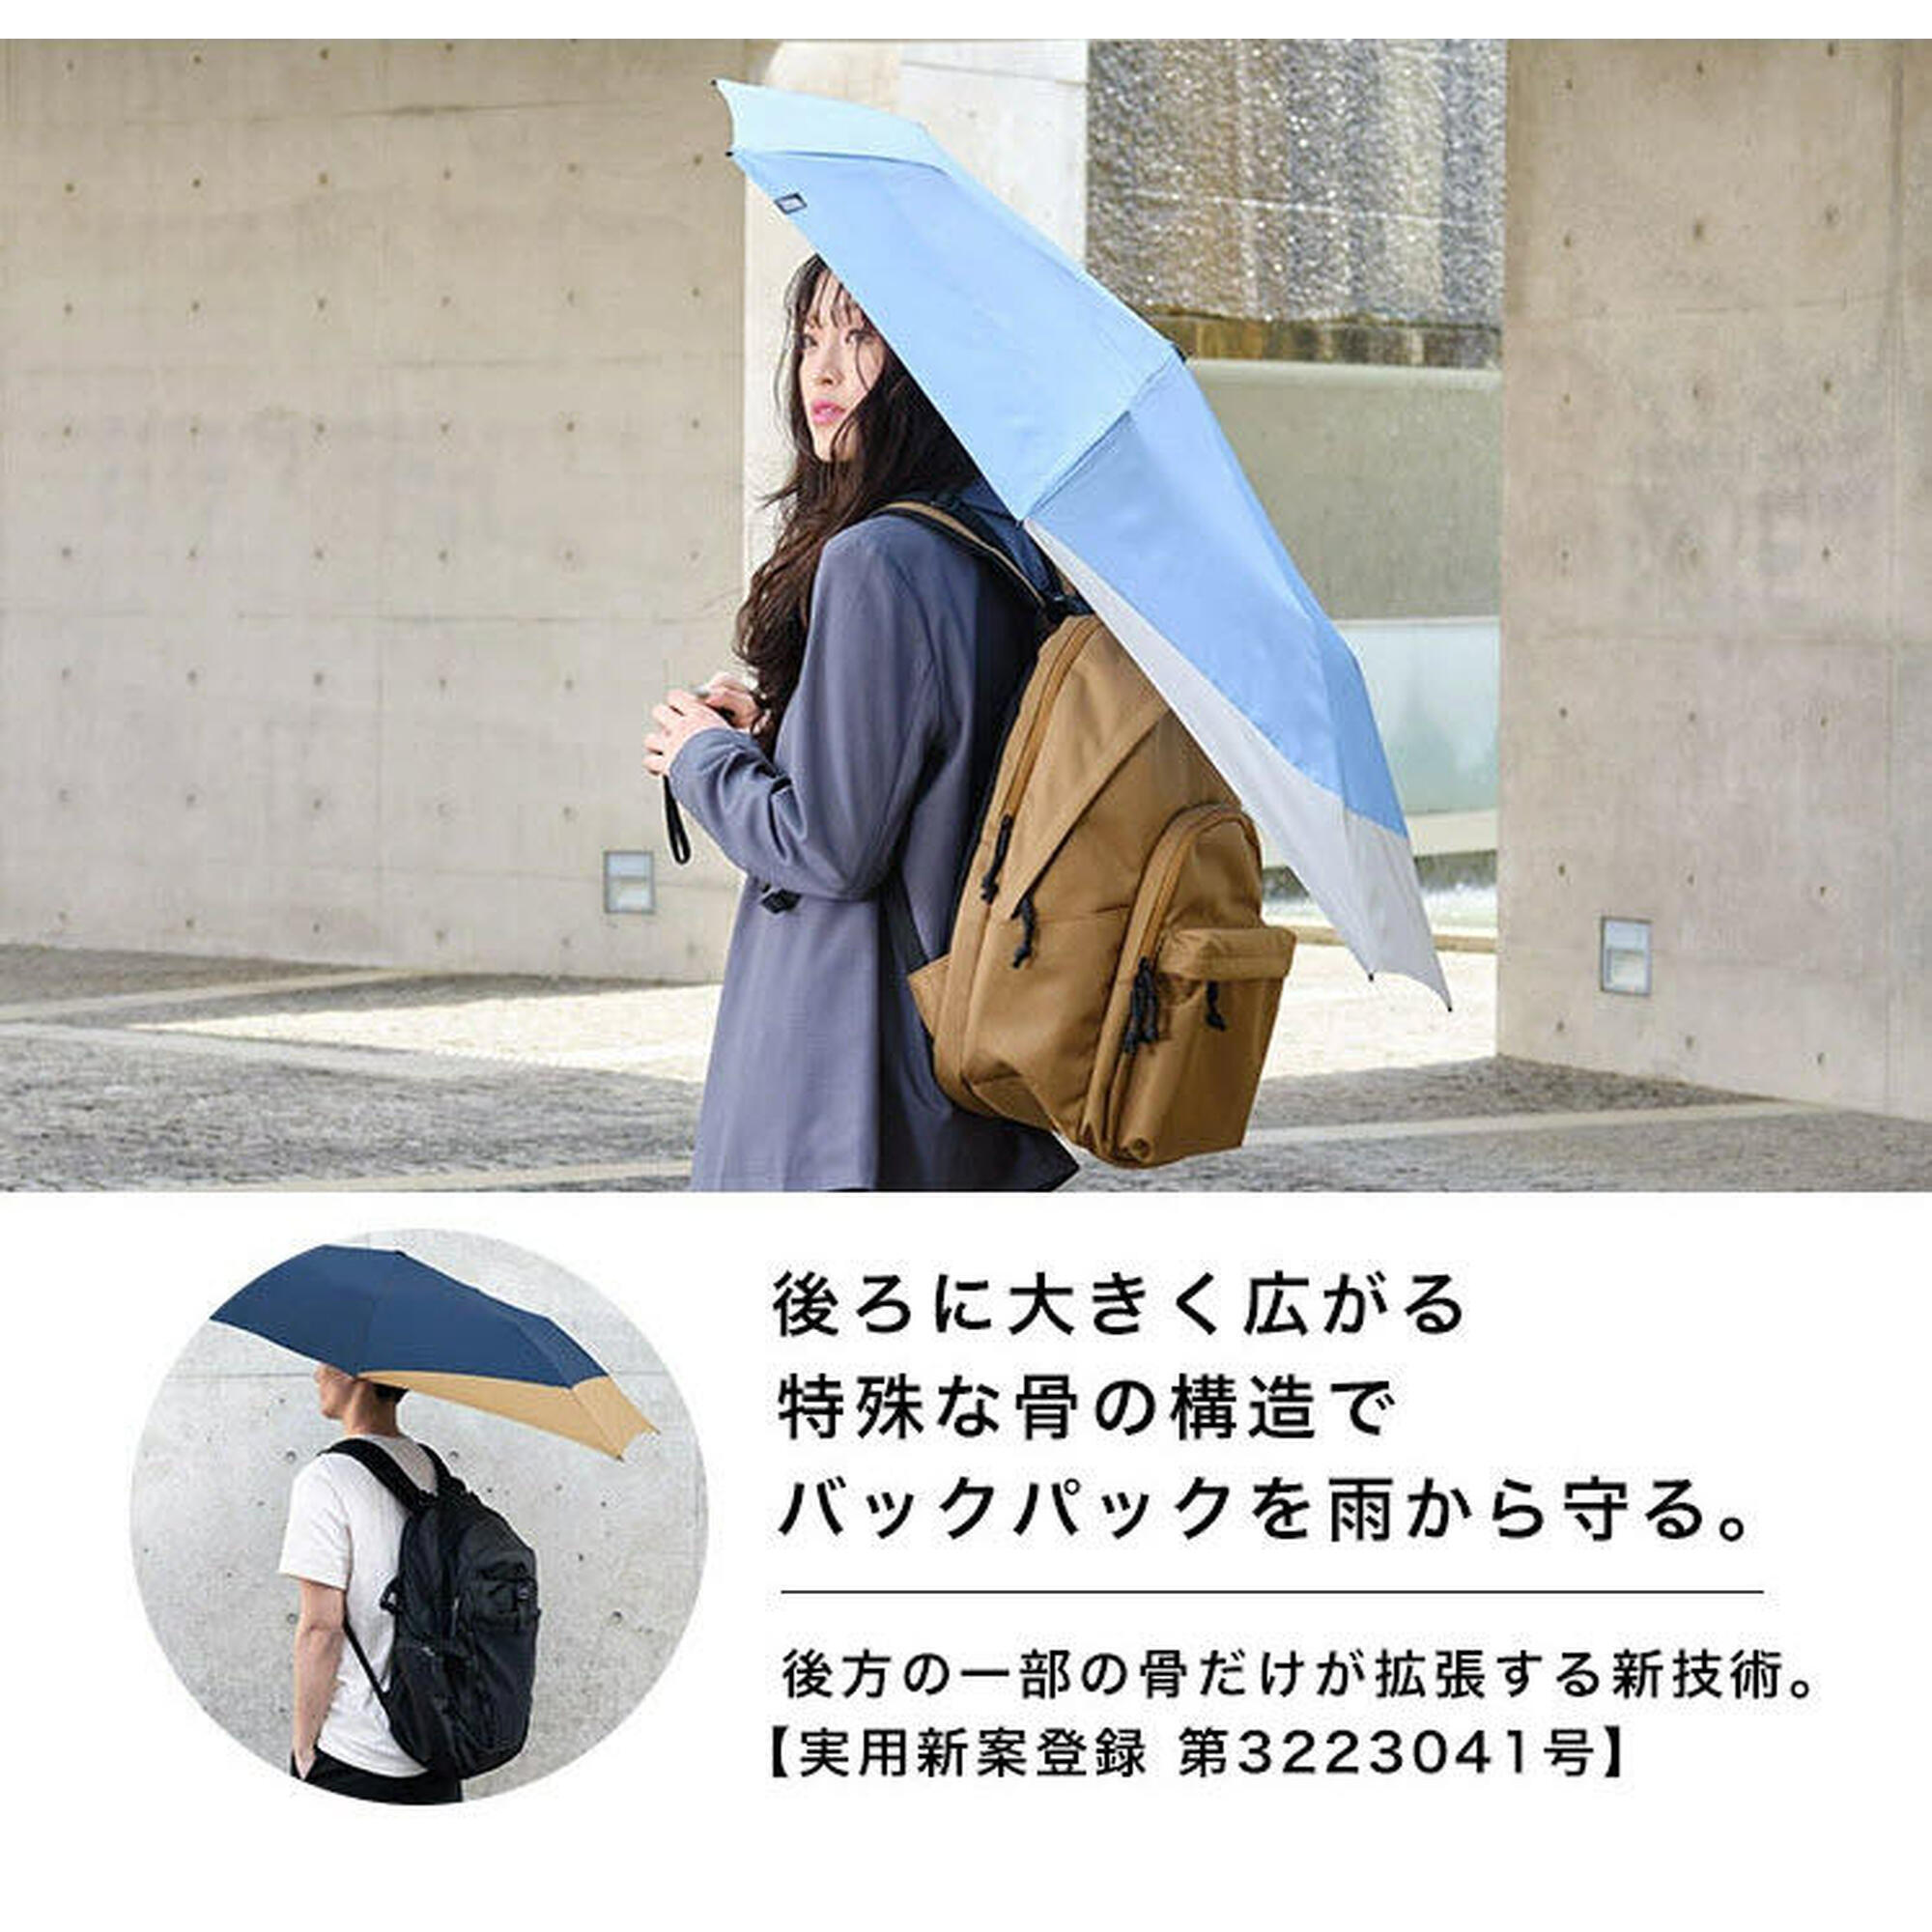 UX系列雙人用縮骨雨傘 - 卡奇/黑